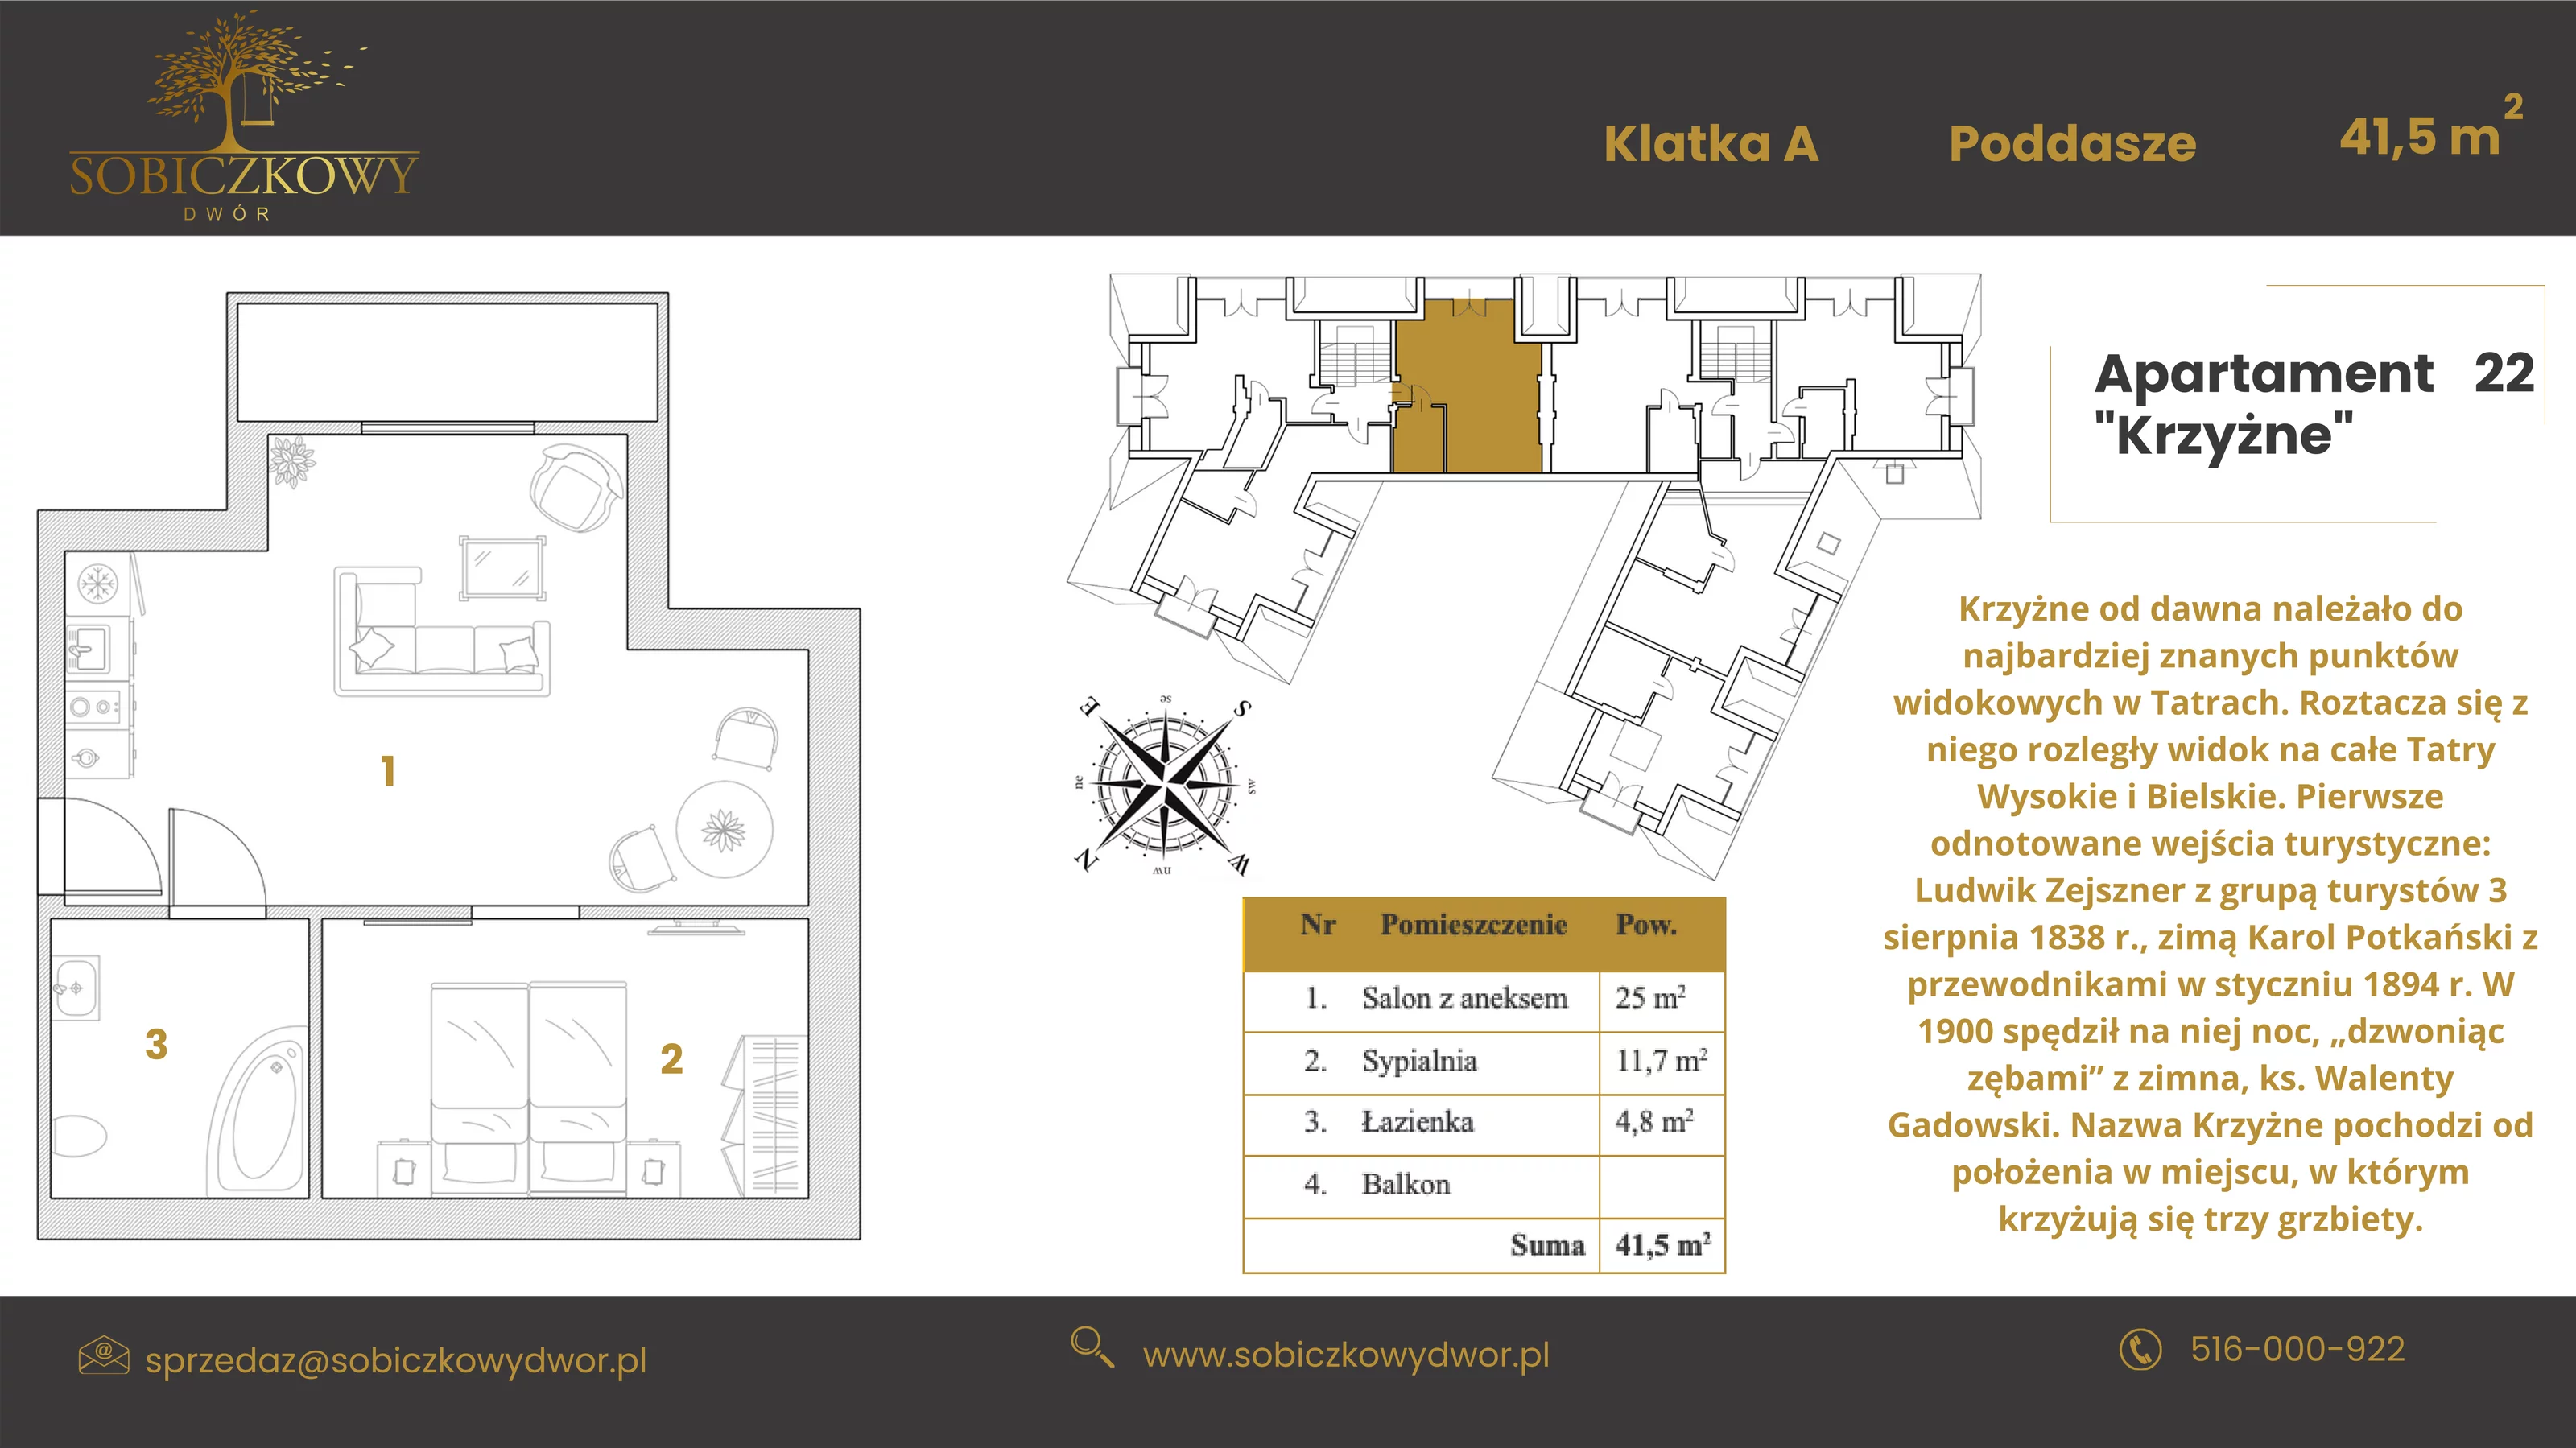 Apartament 41,50 m², piętro 2, oferta nr 22 "Krzyżne", Sobiczkowy Dwór, Kościelisko, ul. Sobiczkowa Bór 1